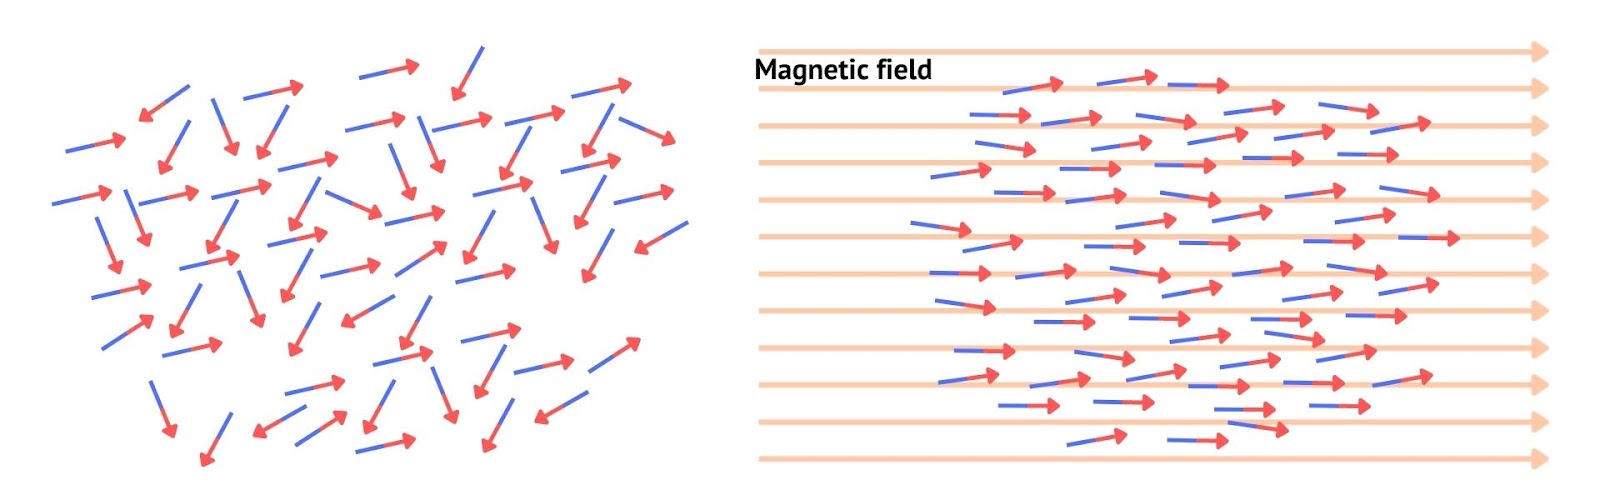 paramagnetic-material-behavior